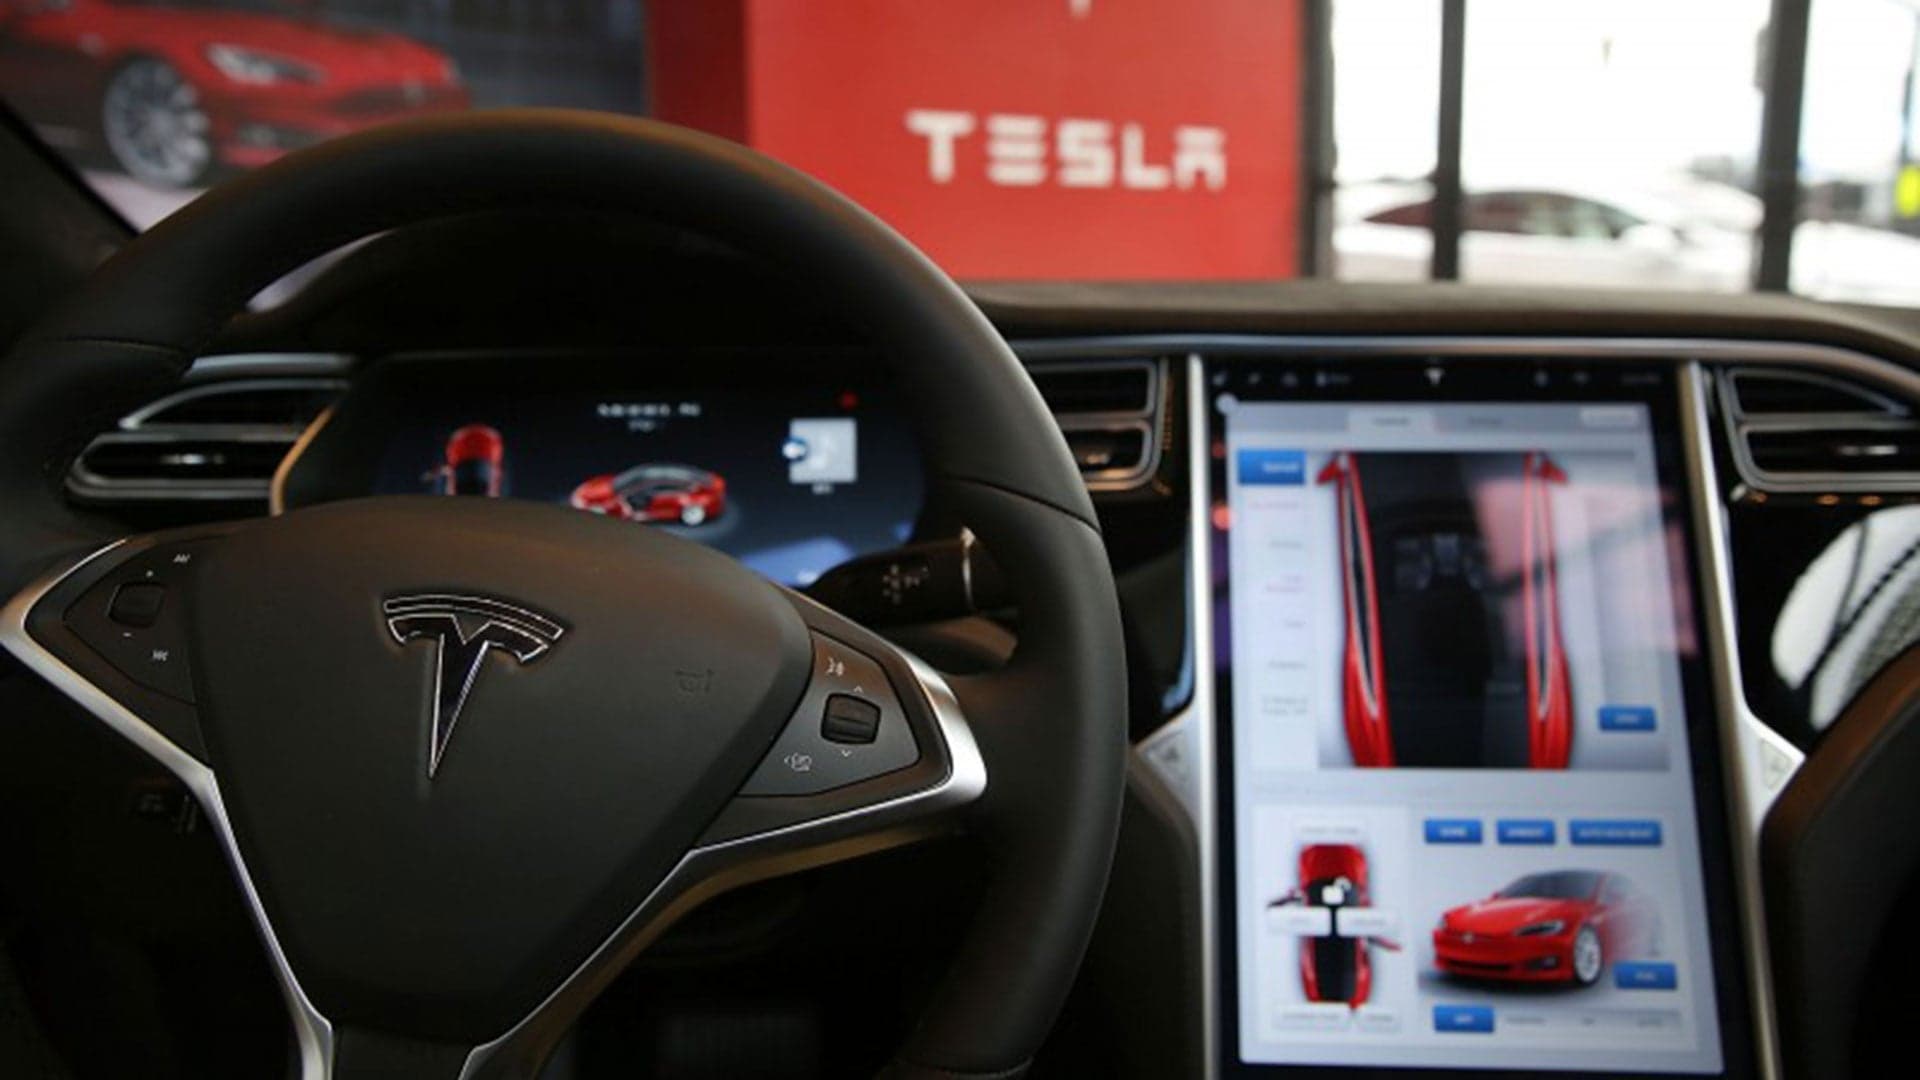 Tesla’s Autopilot Could Be Fully Autonomous in 3 Months, Elon Musk Says